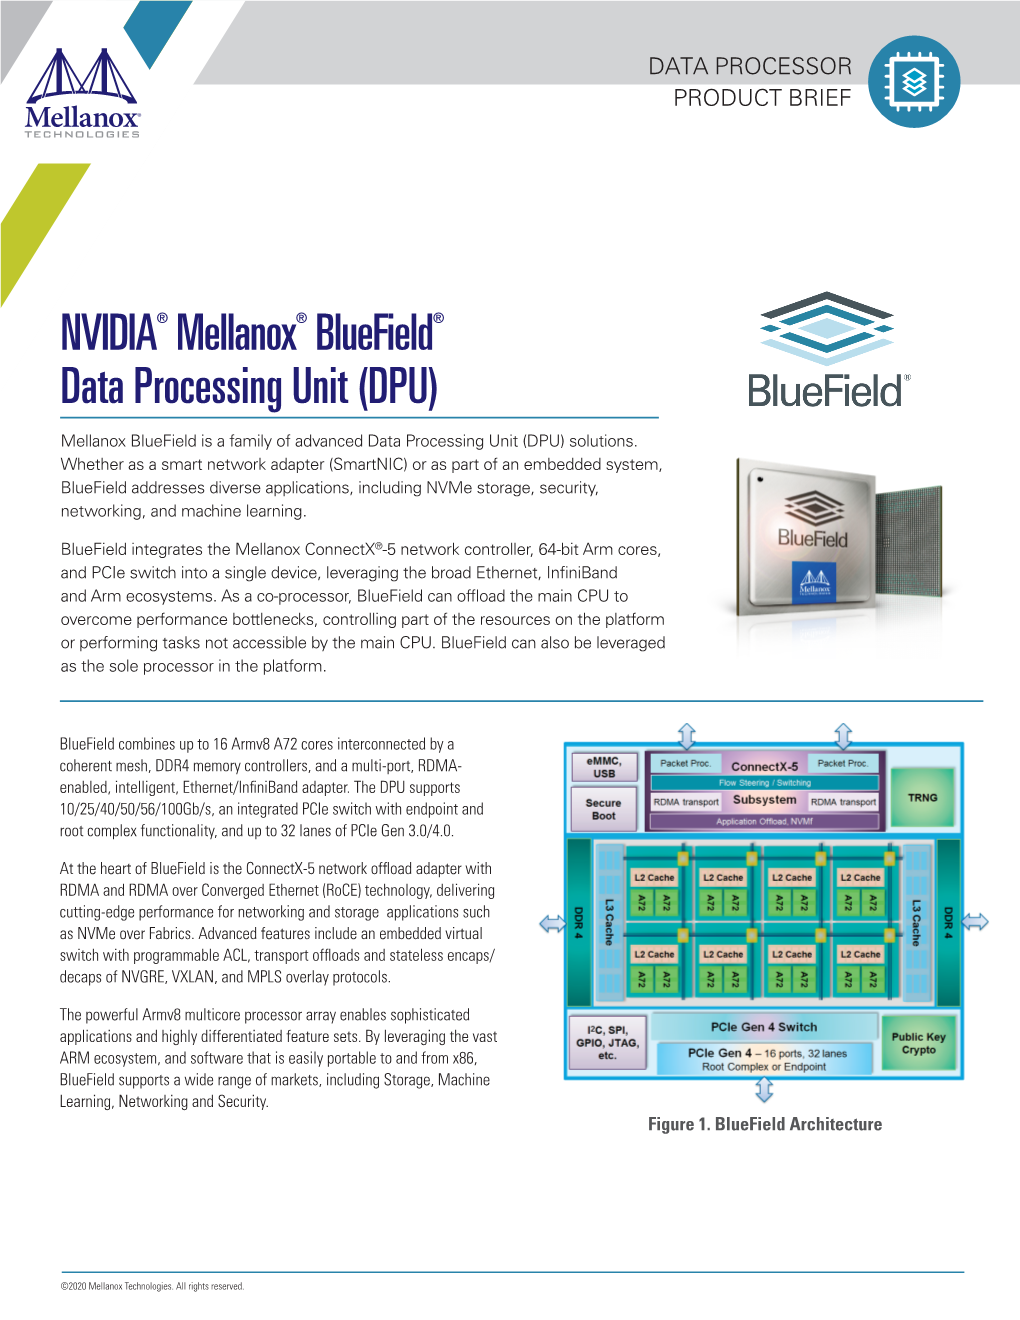 NVIDIA® Mellanox® Bluefield® Data Processing Unit (DPU)